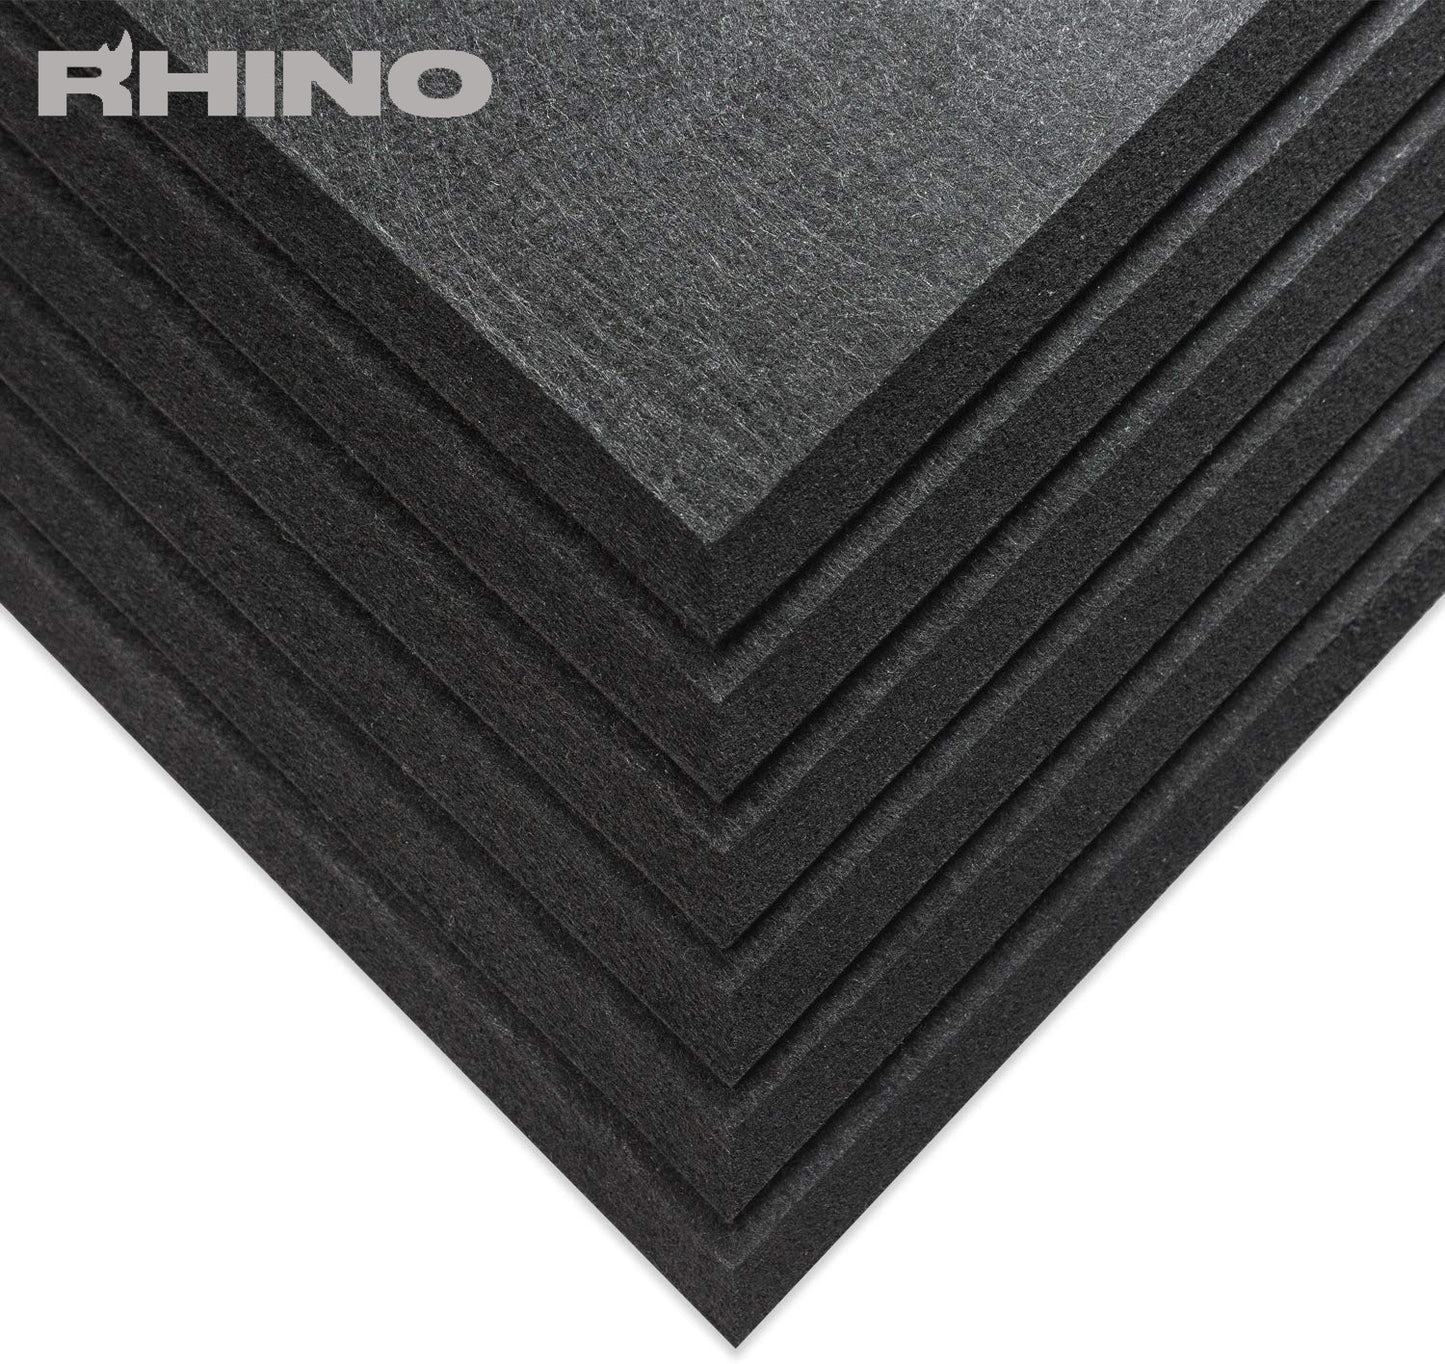 16" x 12" RHINO Acoustic Panels Matte Black Color (6 Pcs)